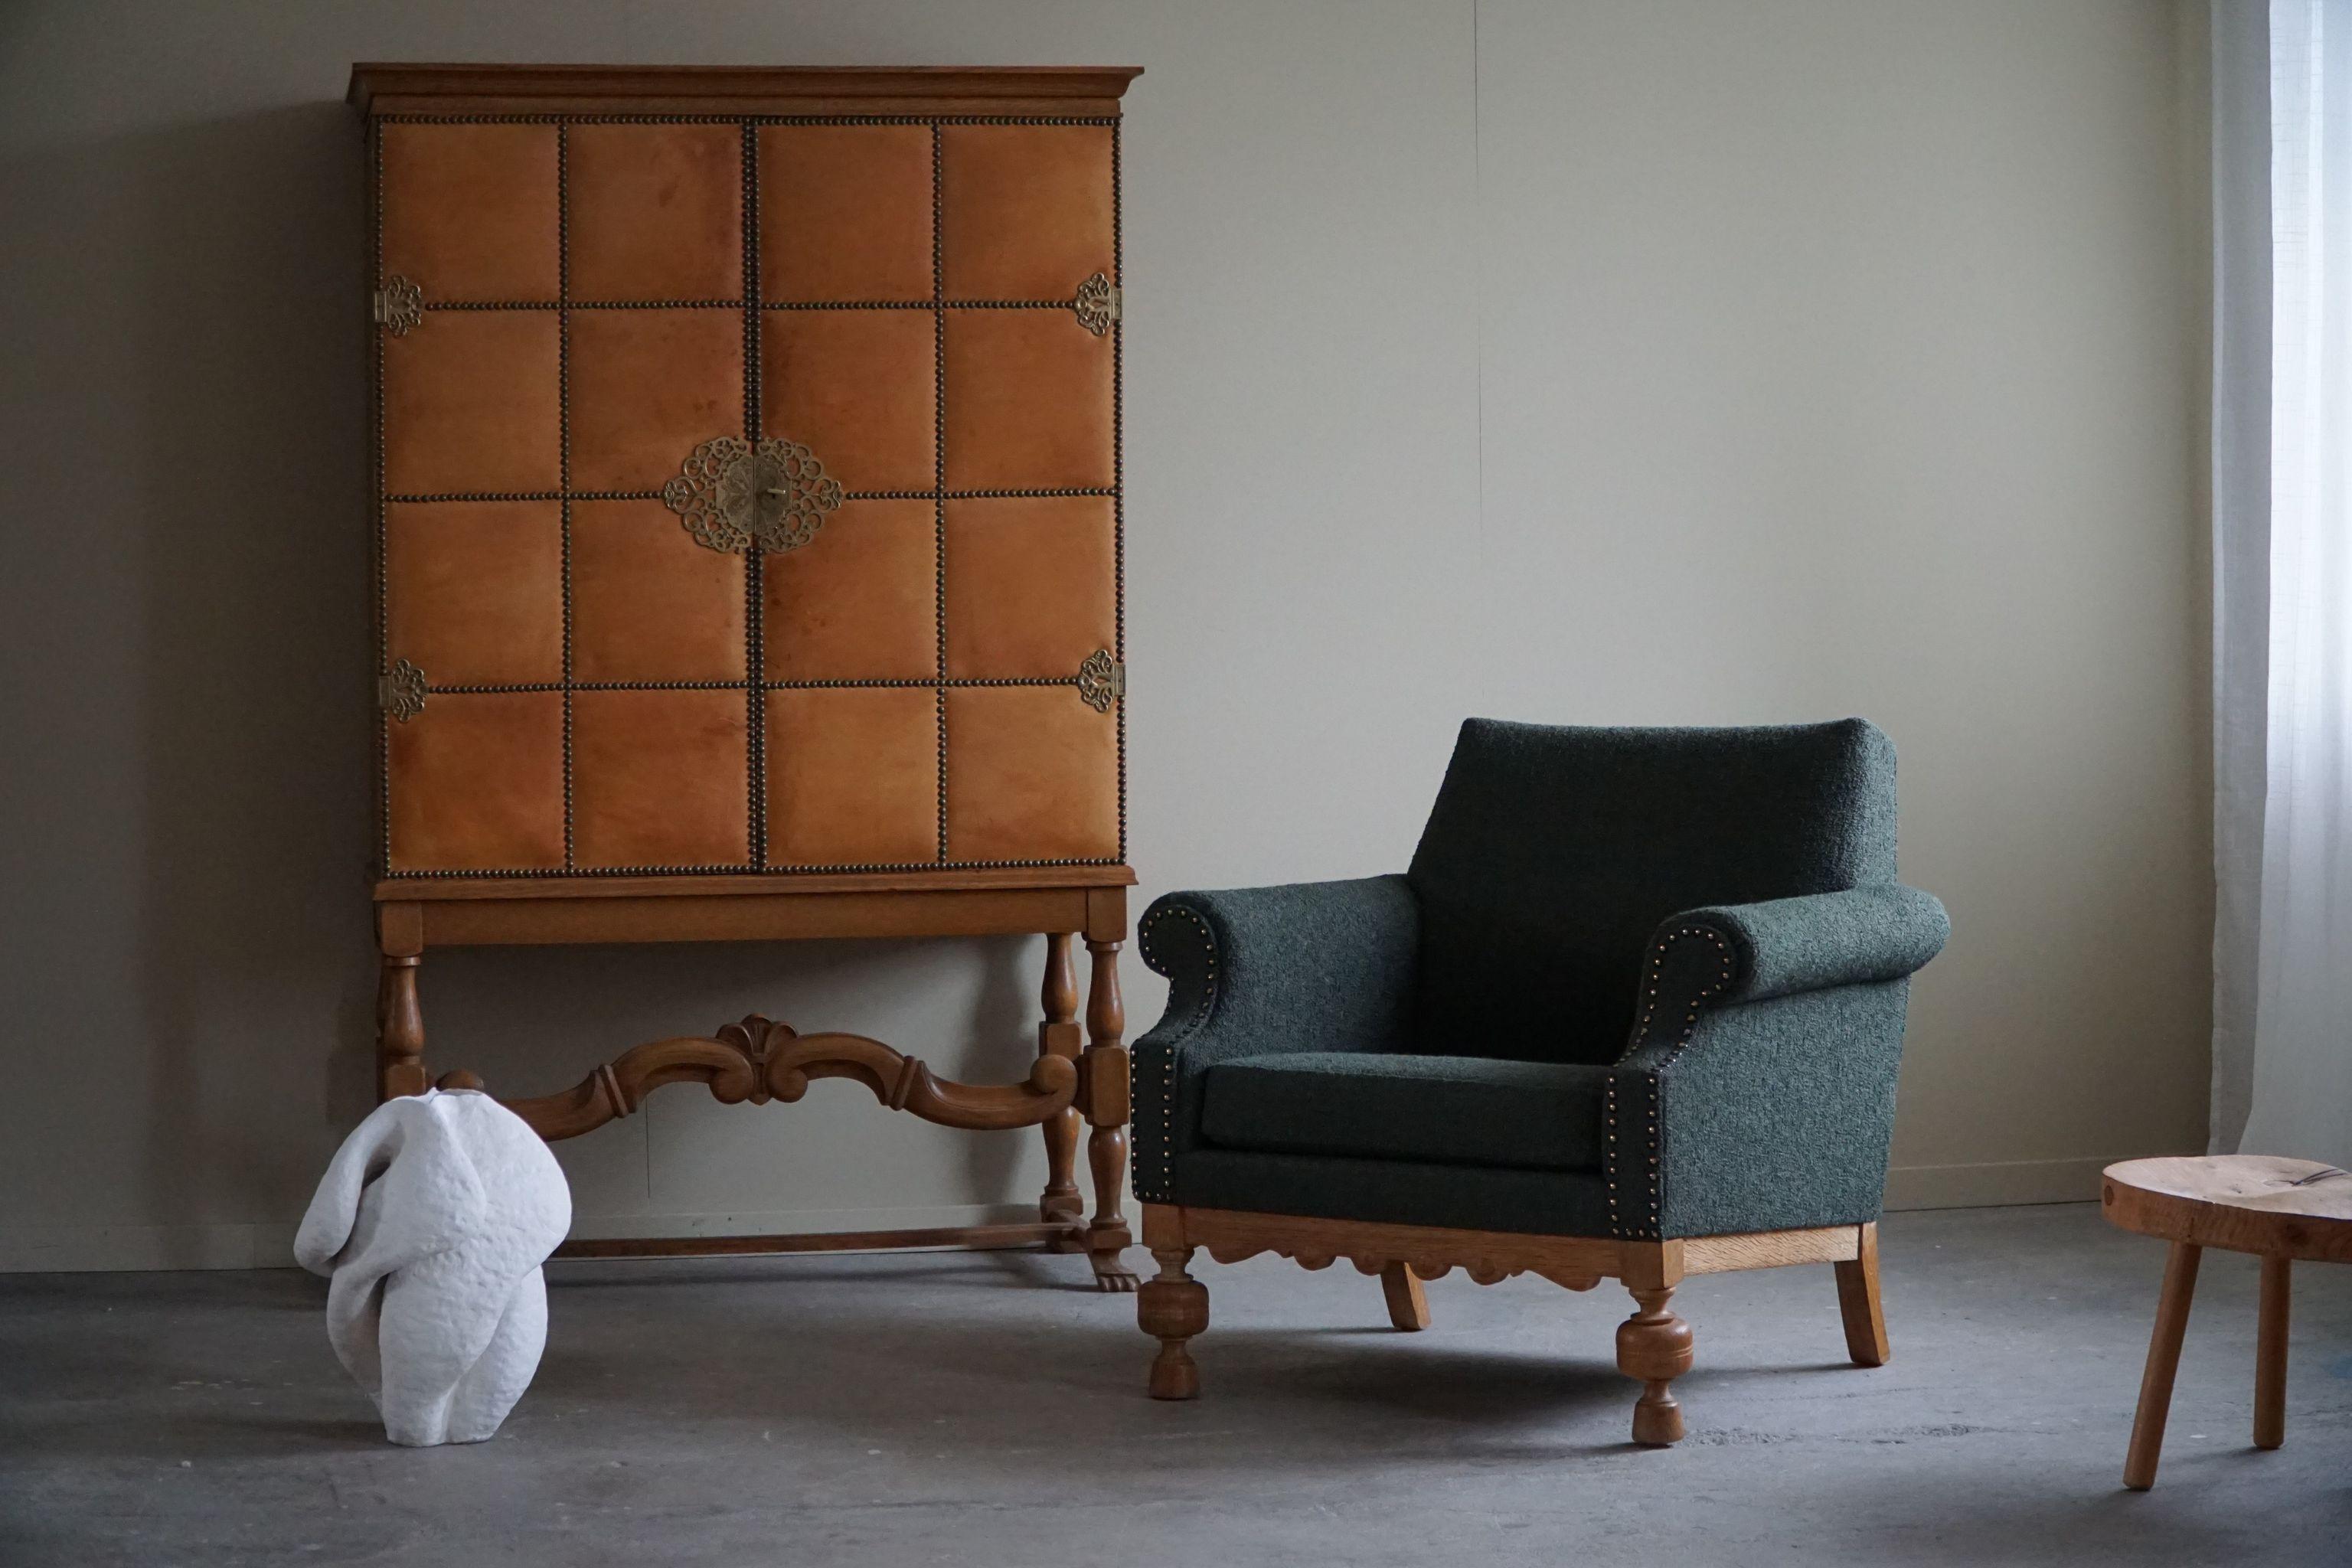 Lounge Chair in Oak & Green Bouclé, Danish Mid-Century Modern, 1950s For Sale 1